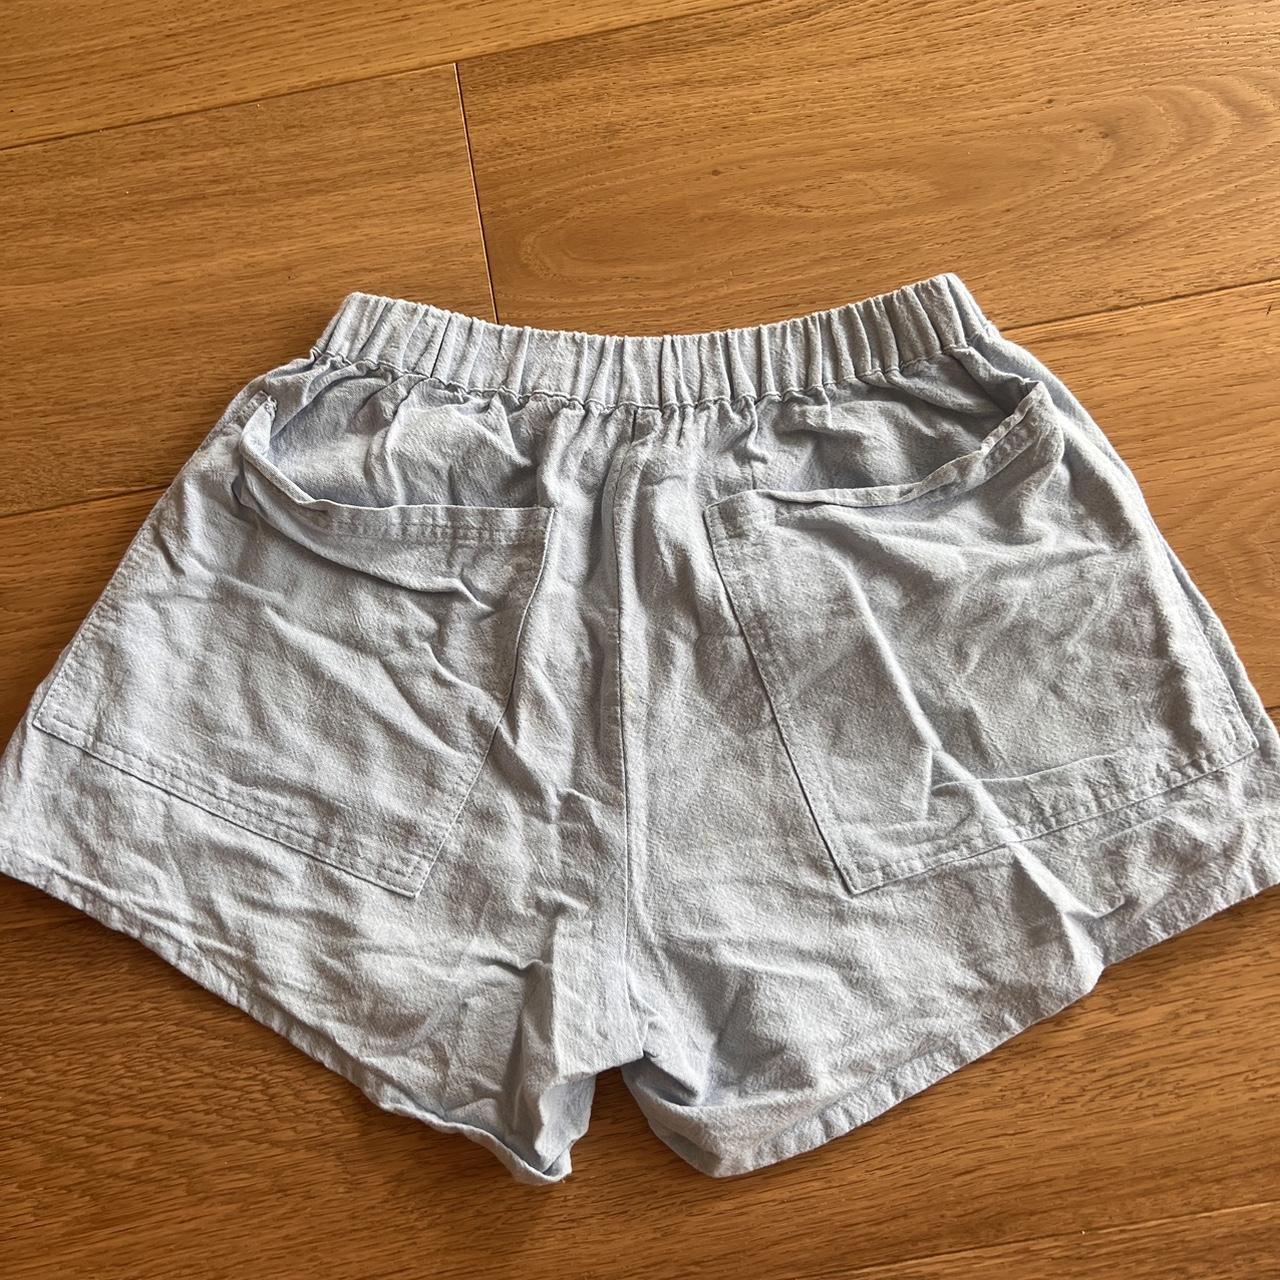 Soft blue 100% linen shorts S/m size Would fit size 8 - Depop